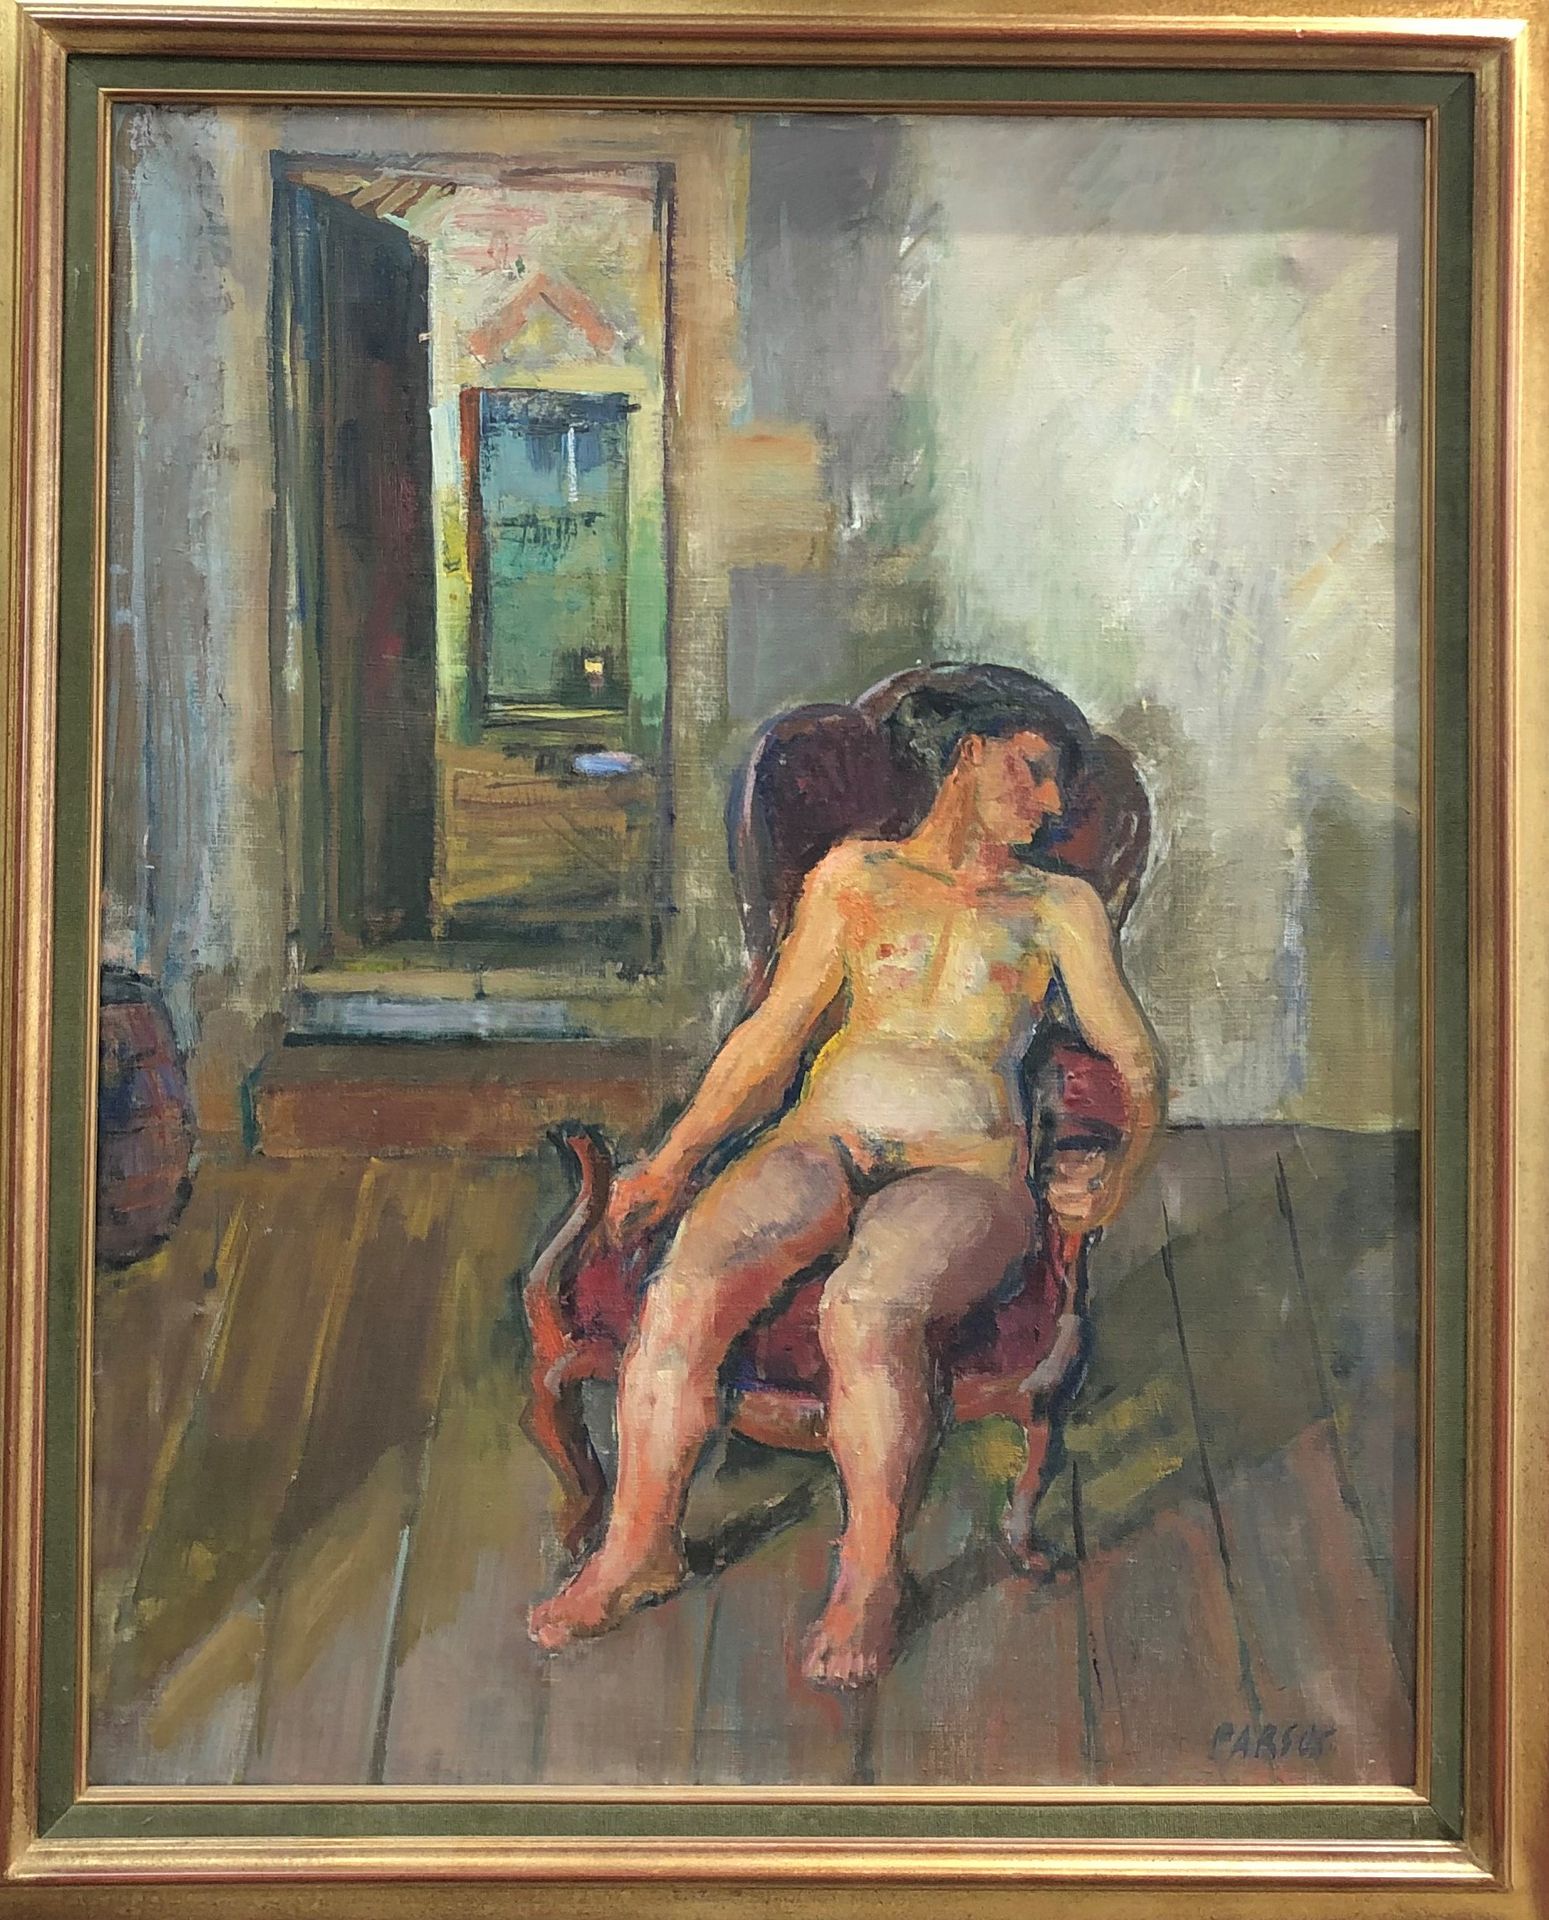 Null Pierre PARSUS (nacido en 1921)

Desnudo sentado en un sillón 

Óleo sobre l&hellip;